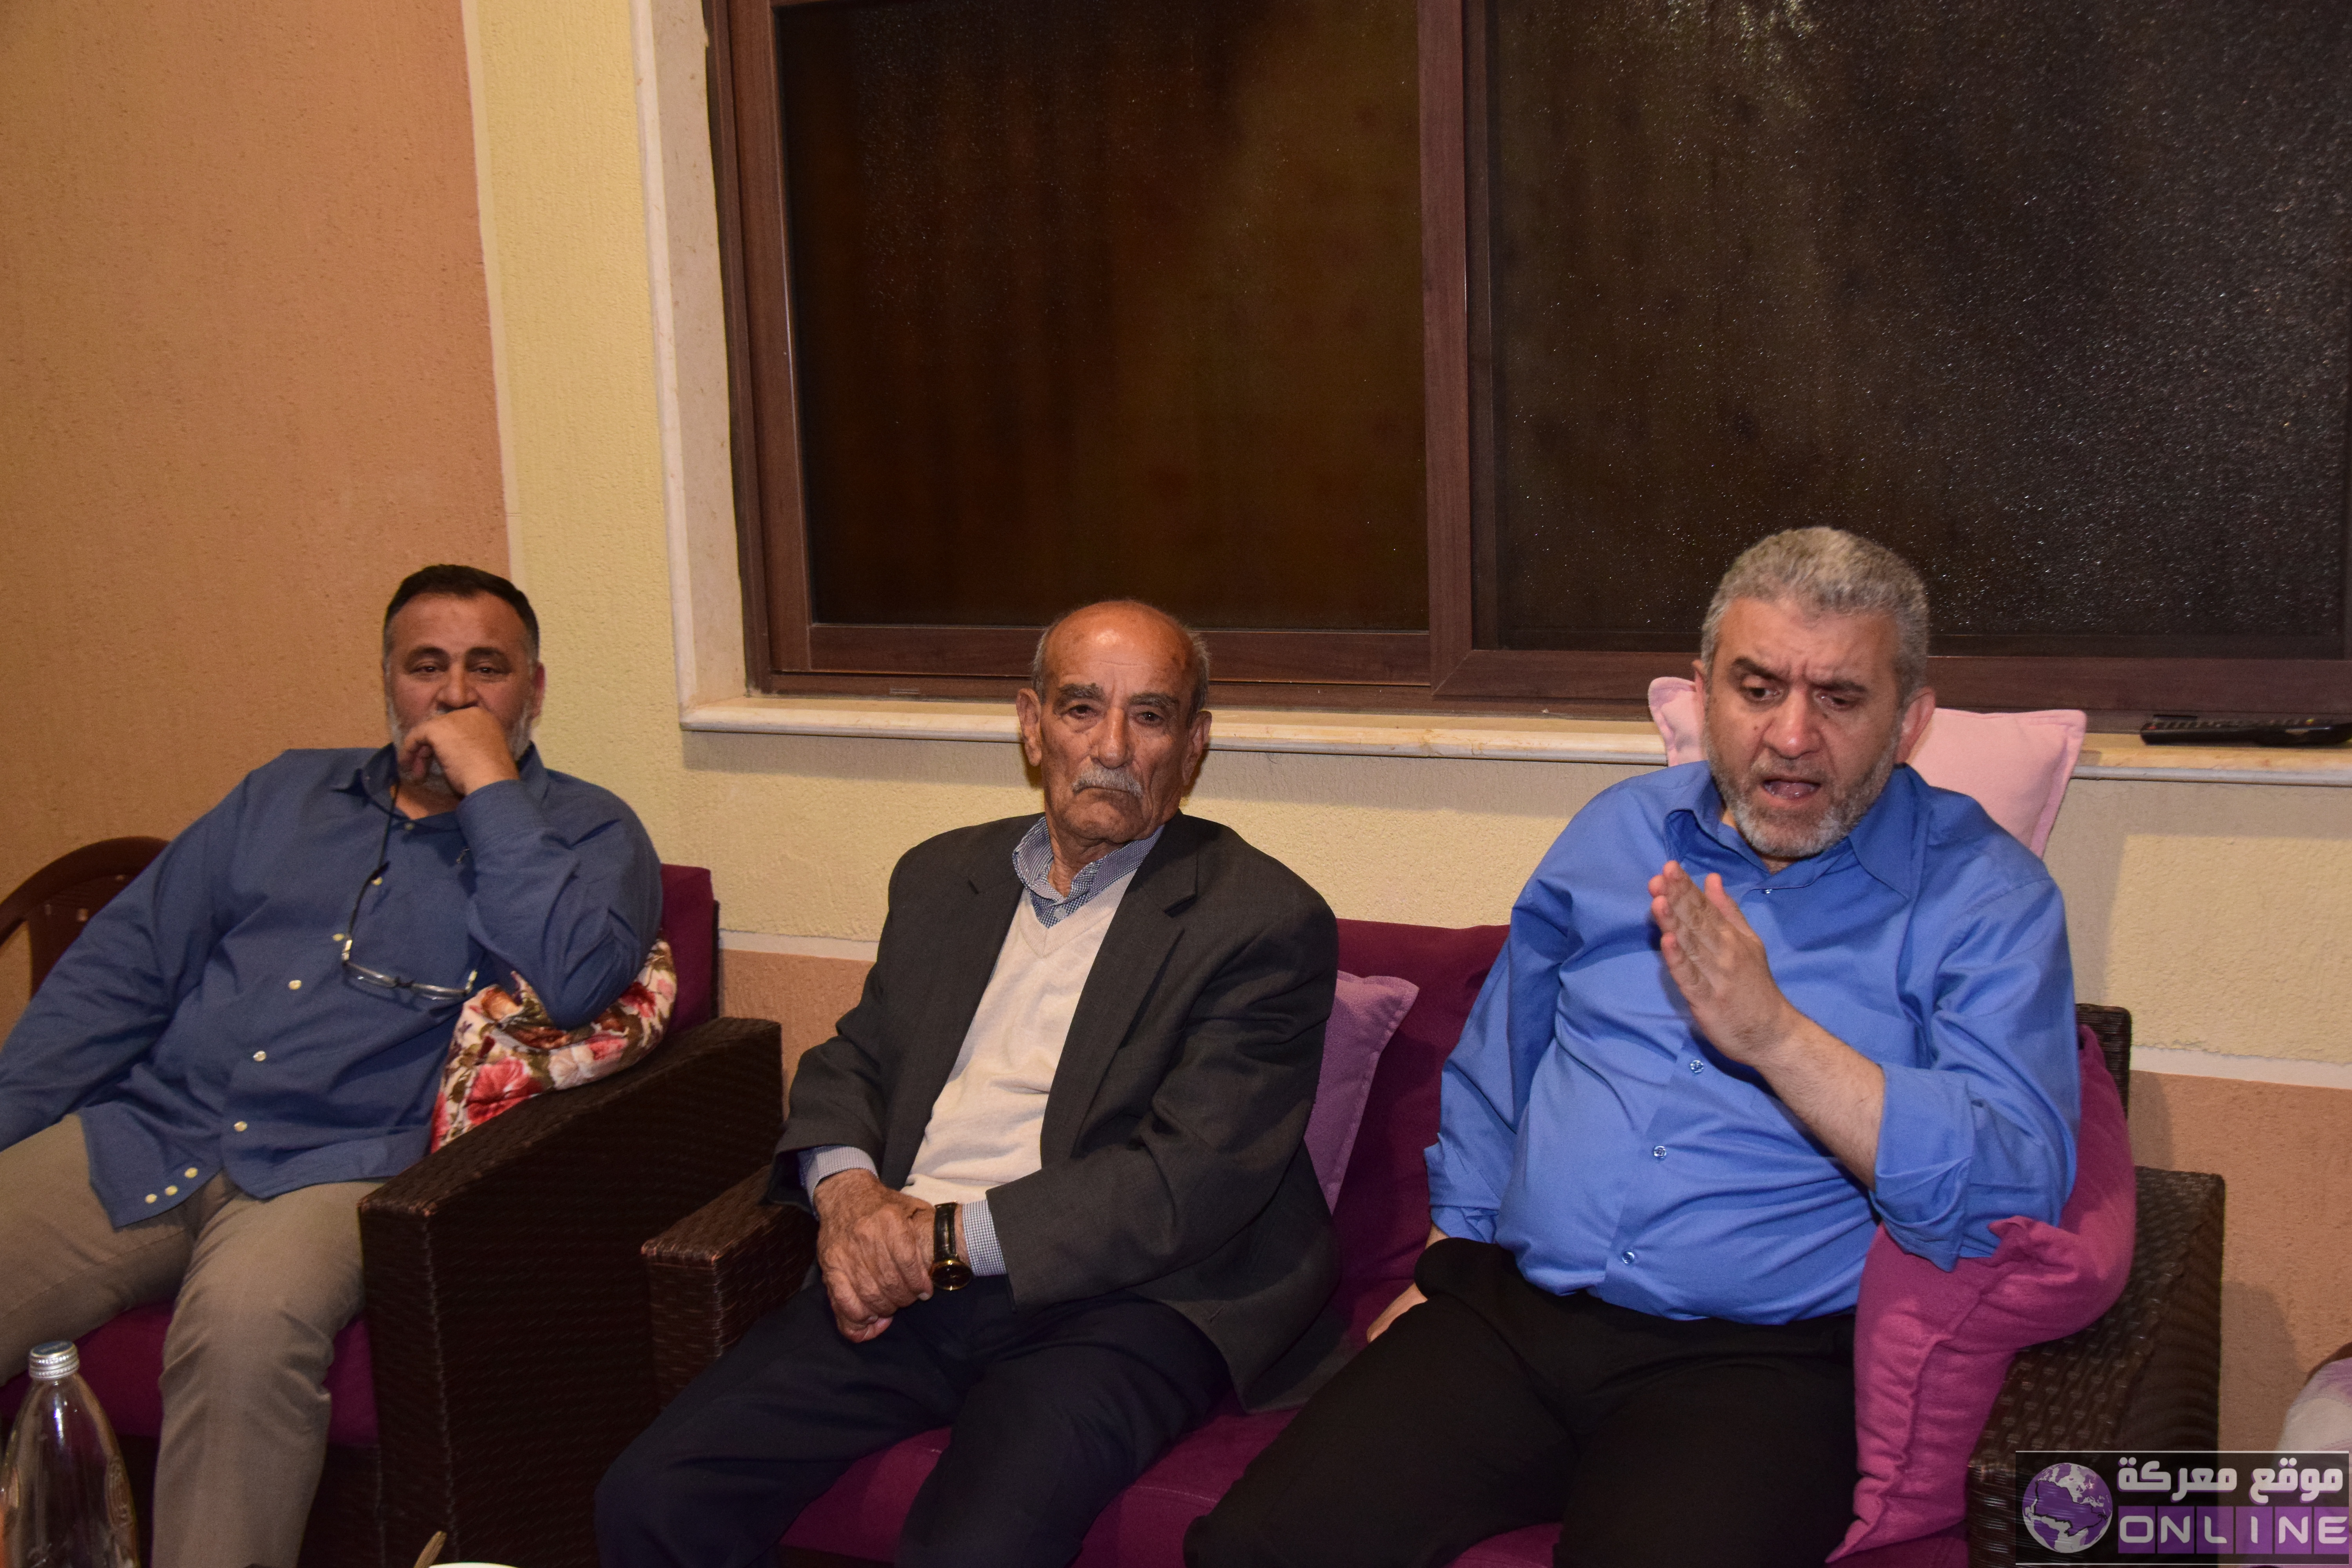 بالصور:وزير العمل في حكومة تصريف الاعمال مصطفى بيرم في ضيافة  رئيس الجمعية الاستاذ  عماد خليل في معركة.